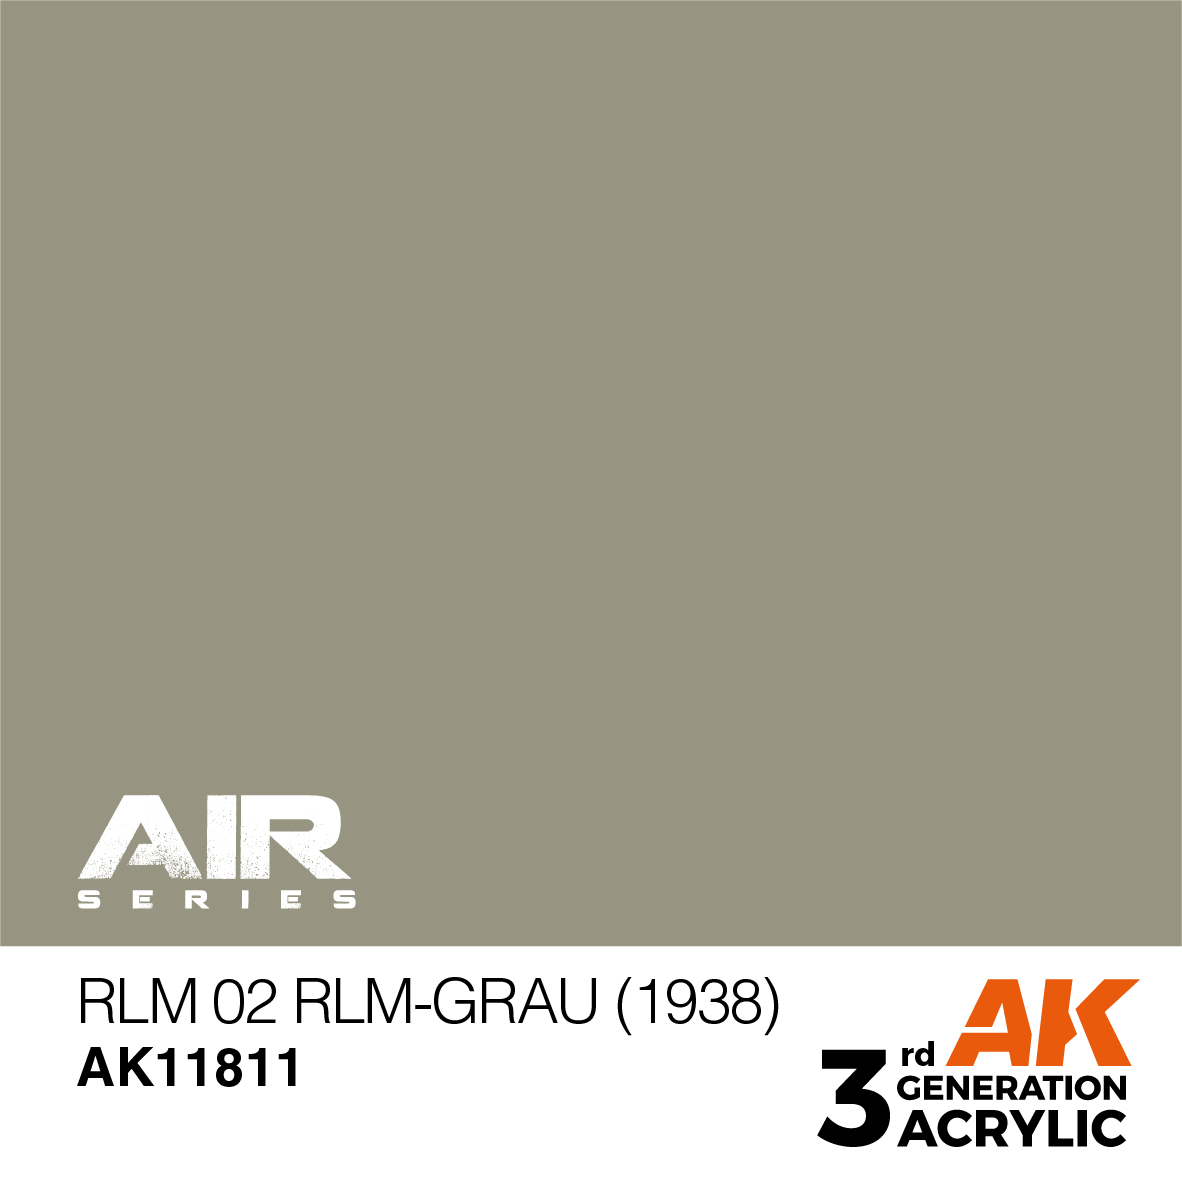 RLM 02 RLM-Grau (1938) – AIR